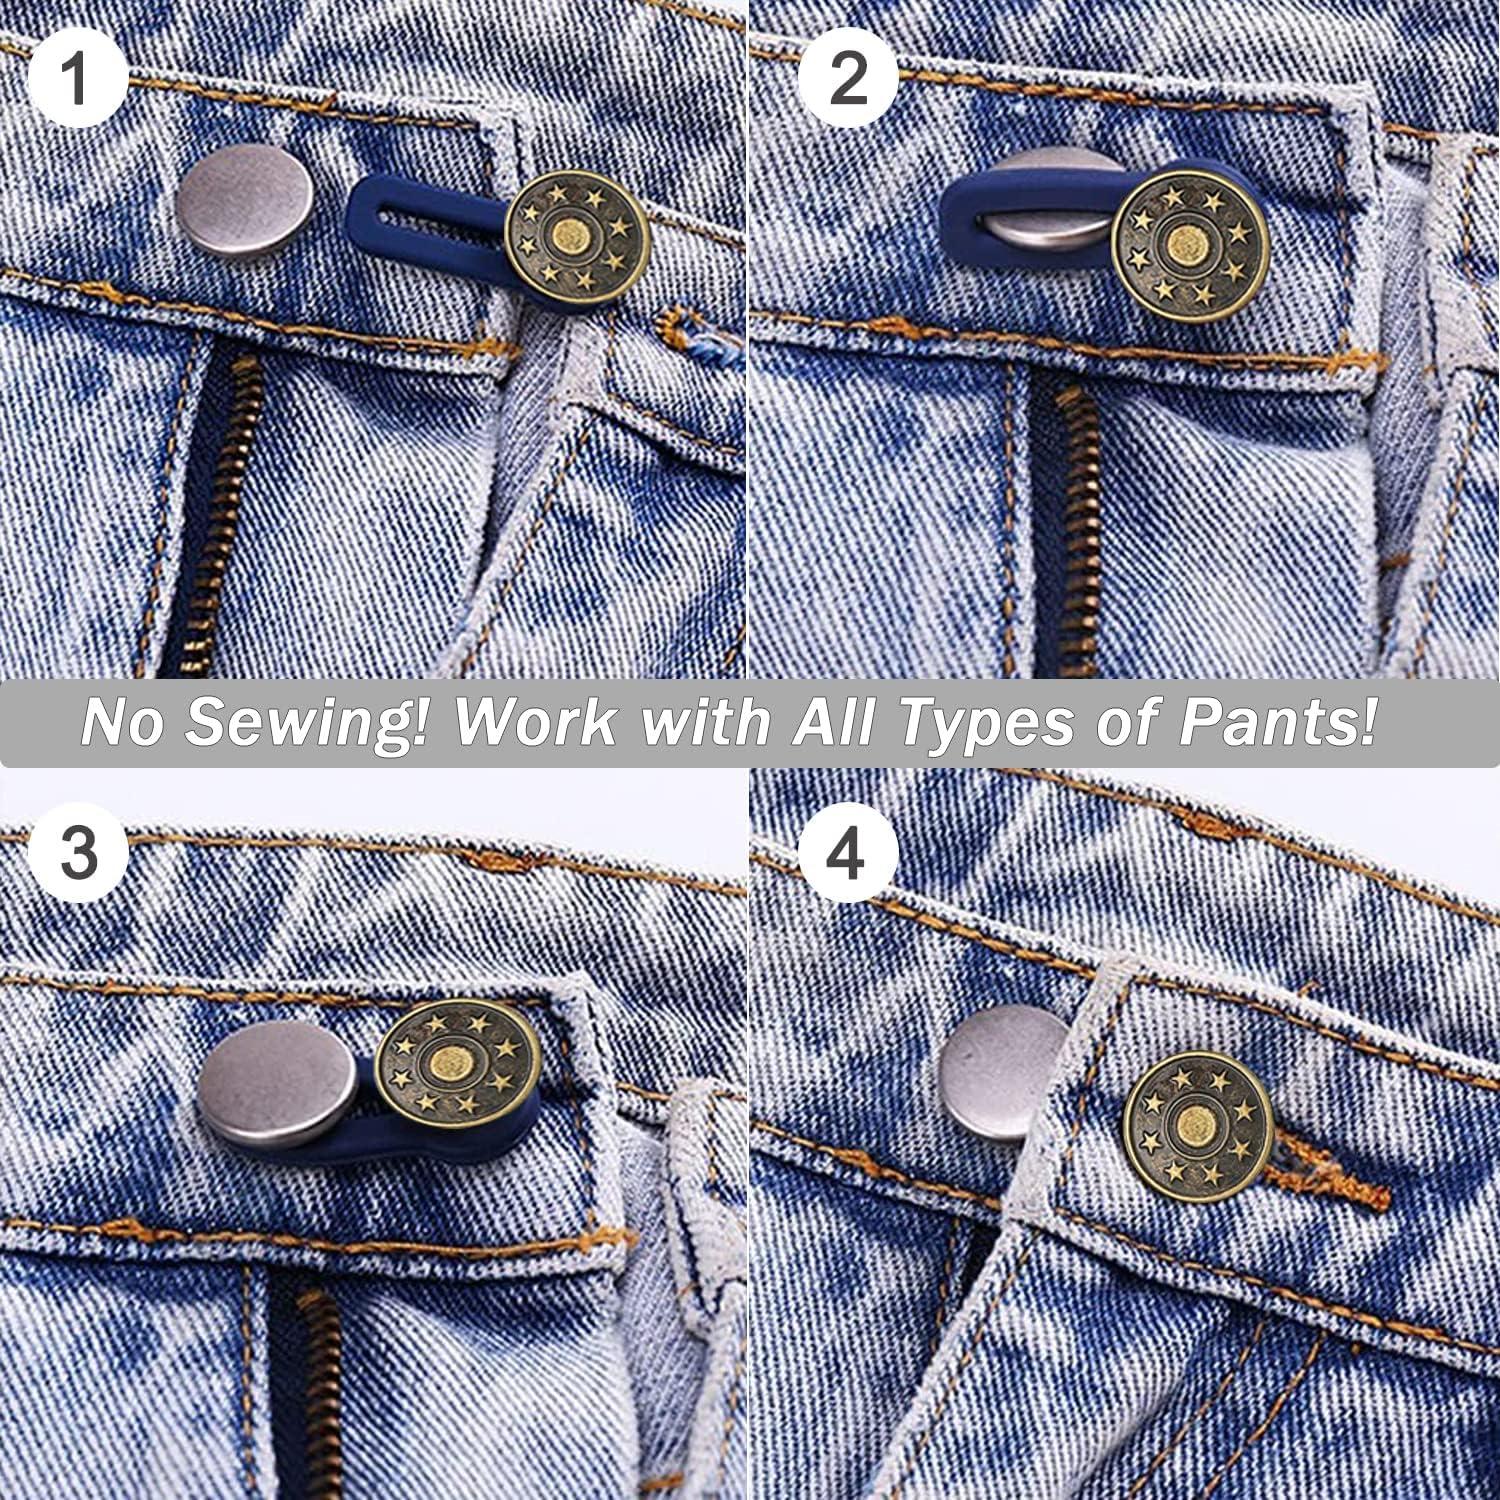 4 Pcs Elastic Waist Extenders,Adjustable Waistband Expander Men and  Women,Jeans Pants Button Extender Set (4 Colors)